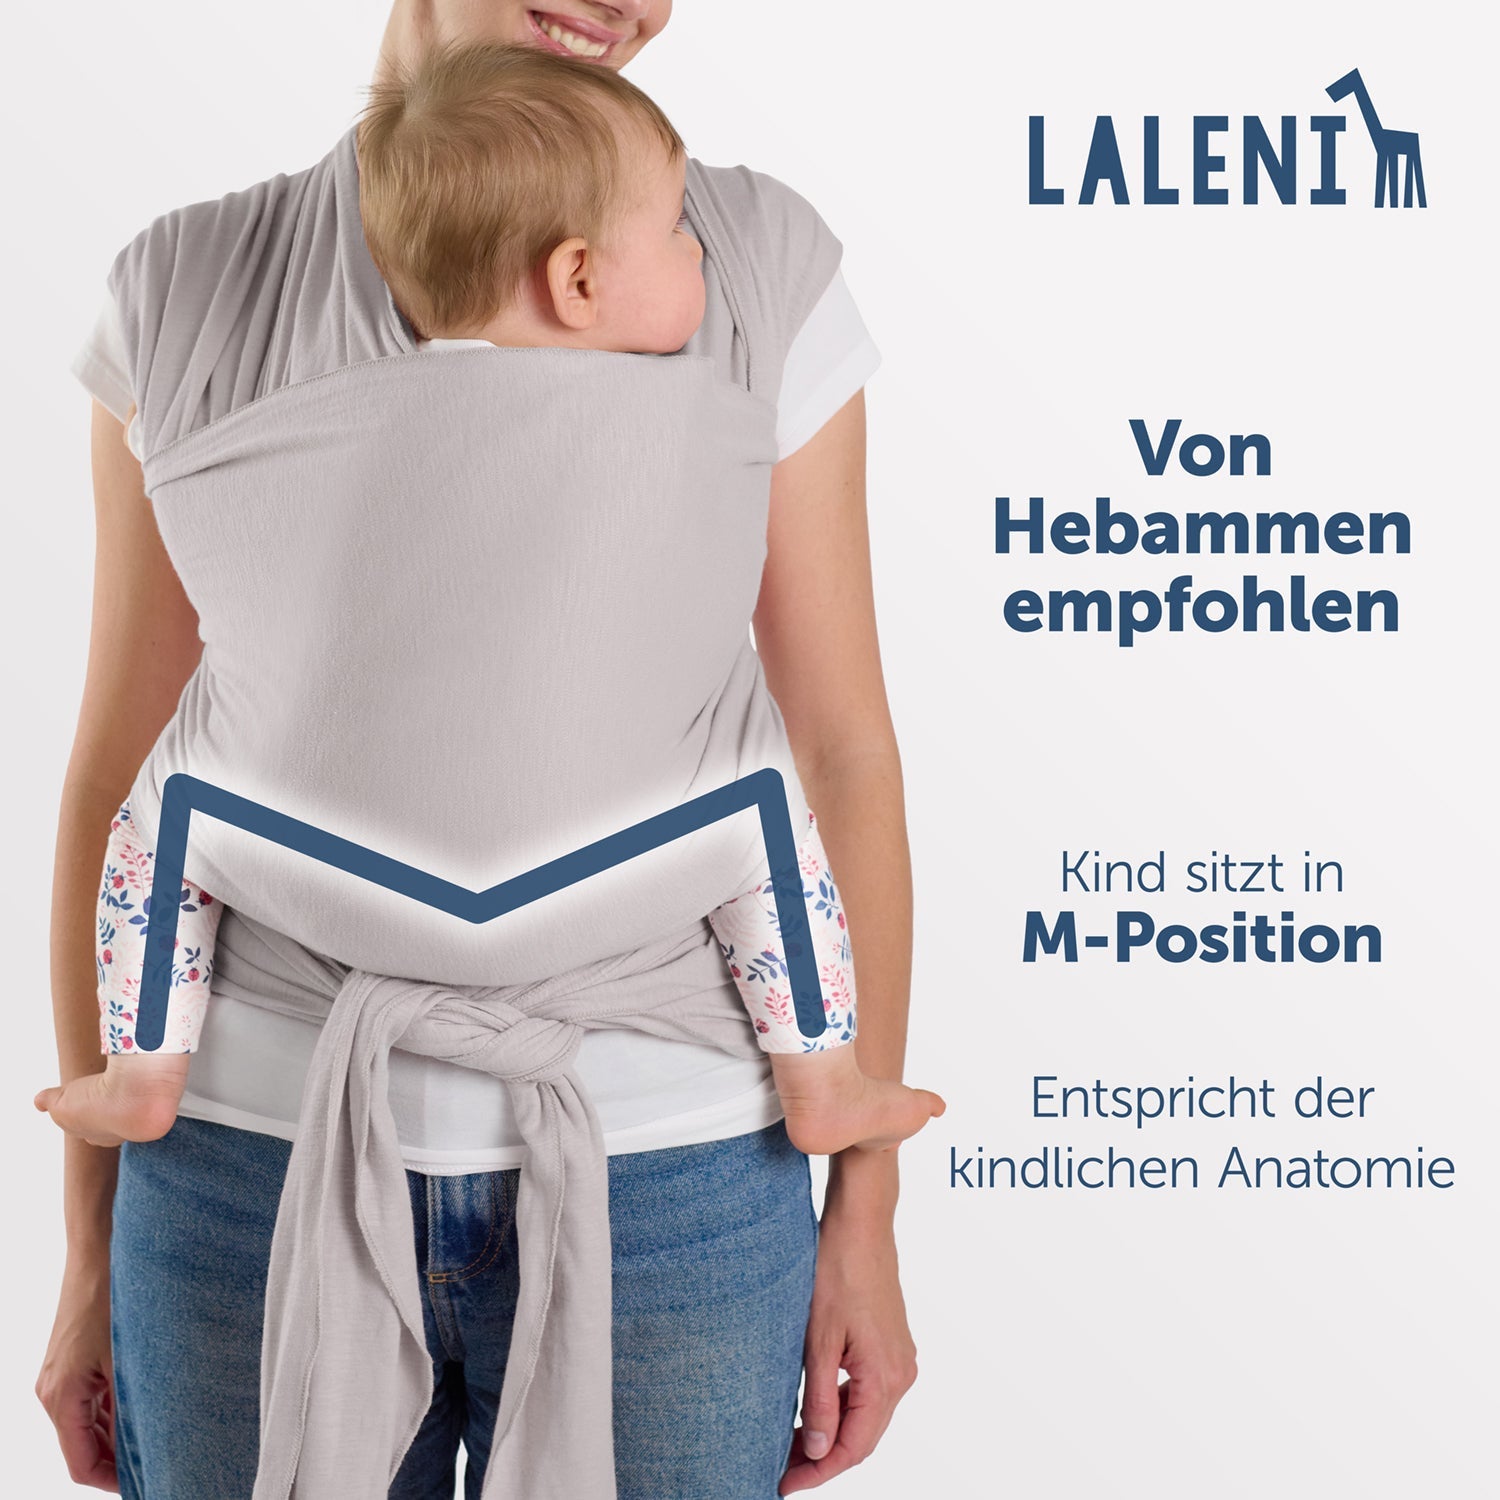 Rückenansicht einer Frau mit Baby in hellgrauer Tragehilfe die M-Position und anatomische Korrektheit des Sitzes werden hervorgehoben.